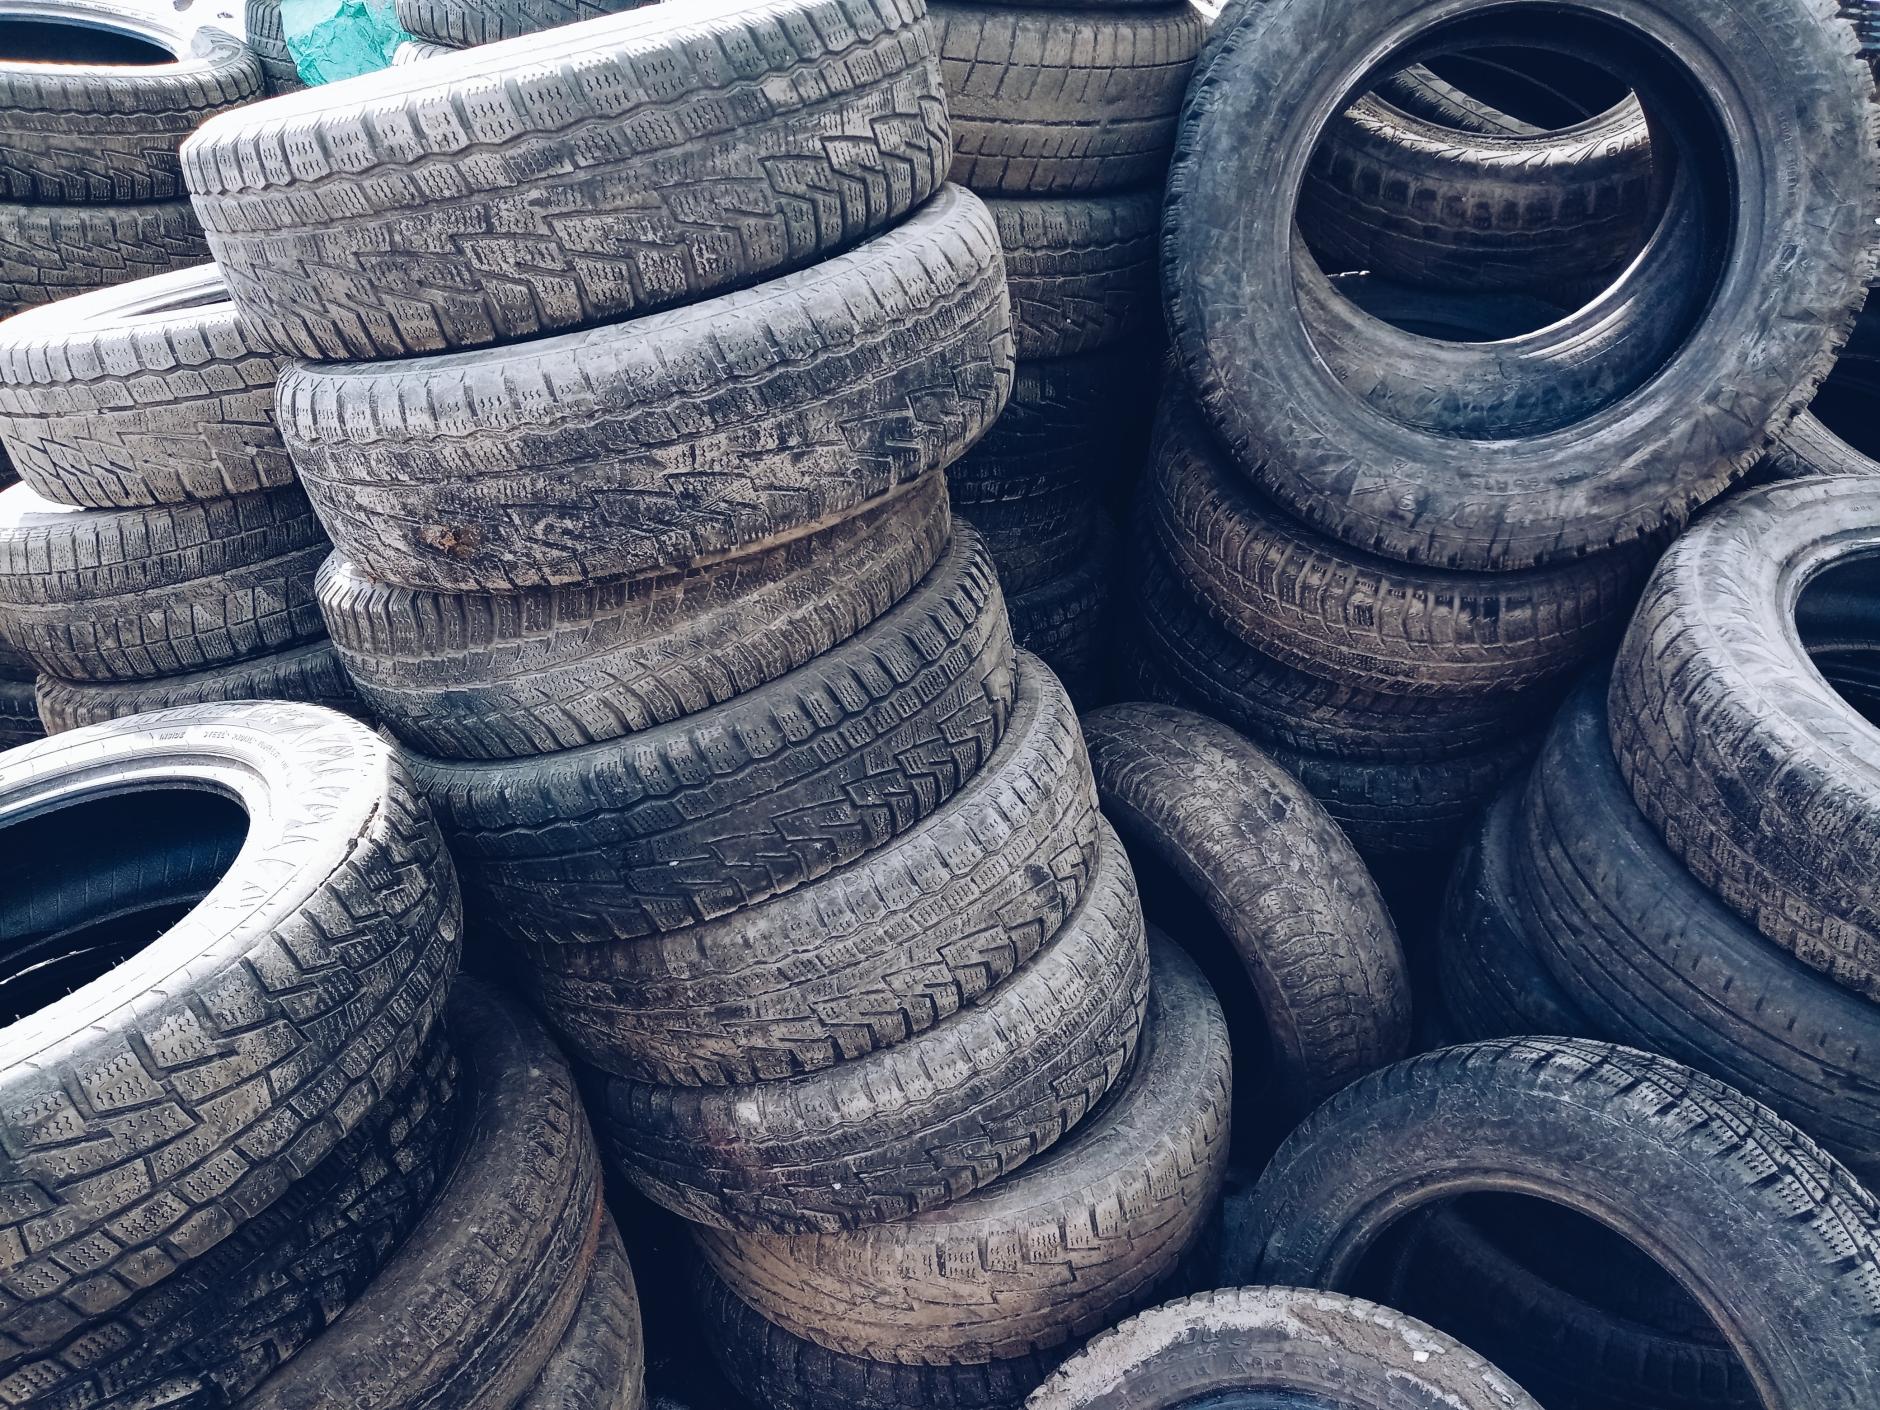 España transforma 40.000 toneladas de neumáticos usados al año en energía mediante pirolisis